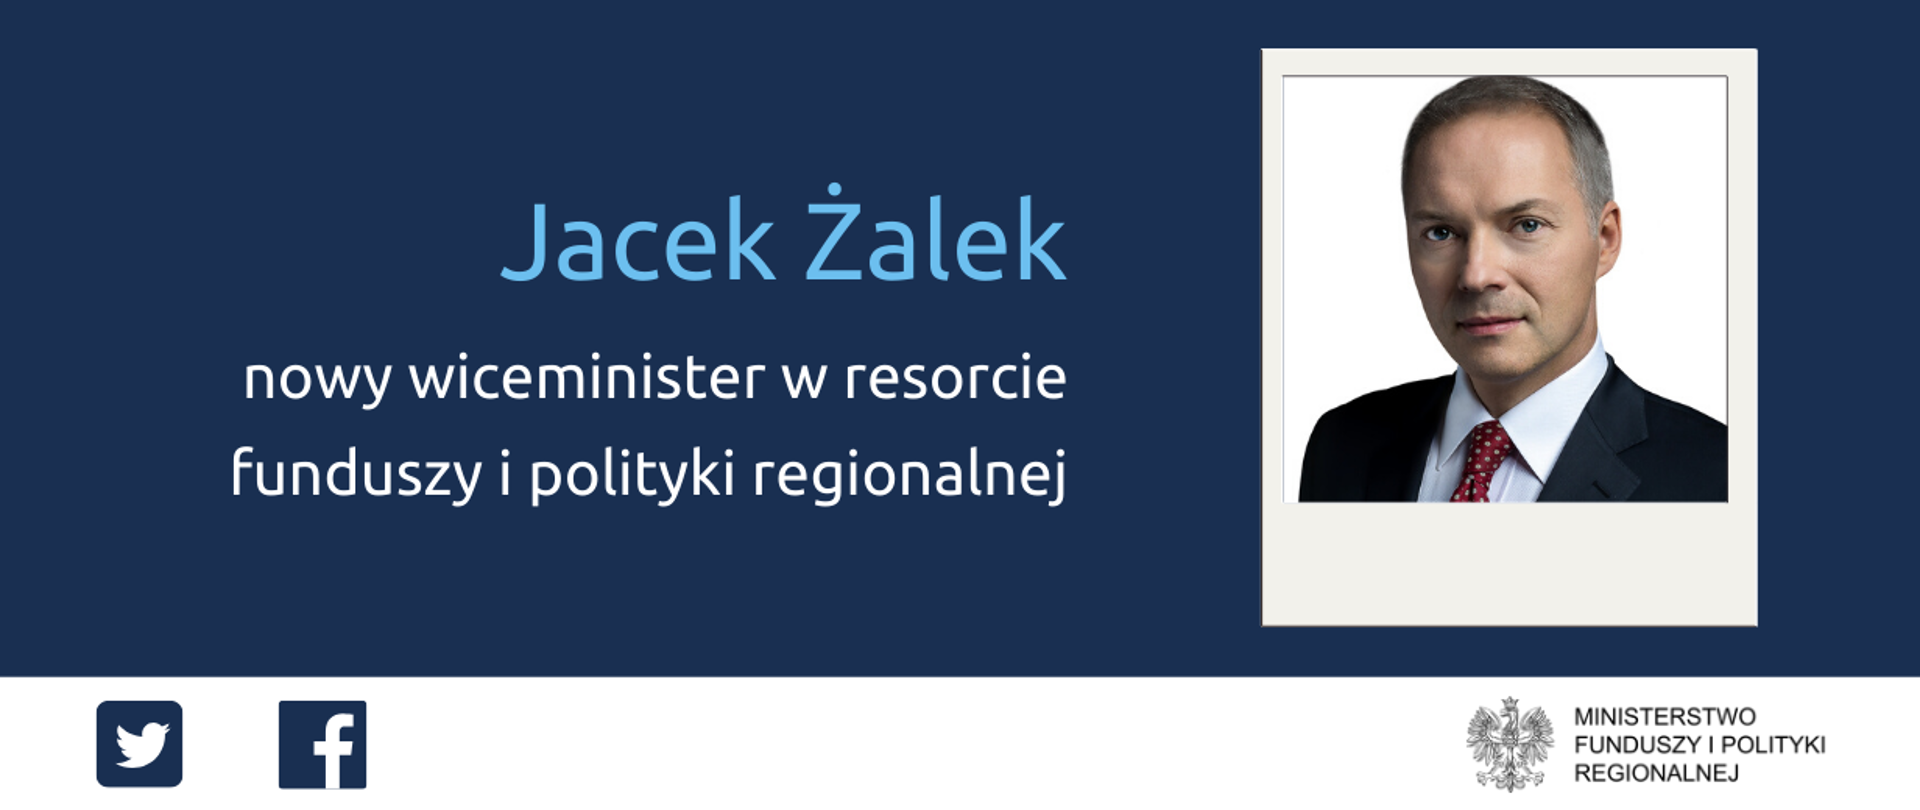 Napis: Jacek Żalek - nowy wiceminister w resorcie funduszy i polityki regionalnej. Po prawej zdjęcie portretowe wiceministra. Na dole ikonki Twittera oraz Facebooka i logotyp Ministerstwa Funduszy i Polityki Regionalnej